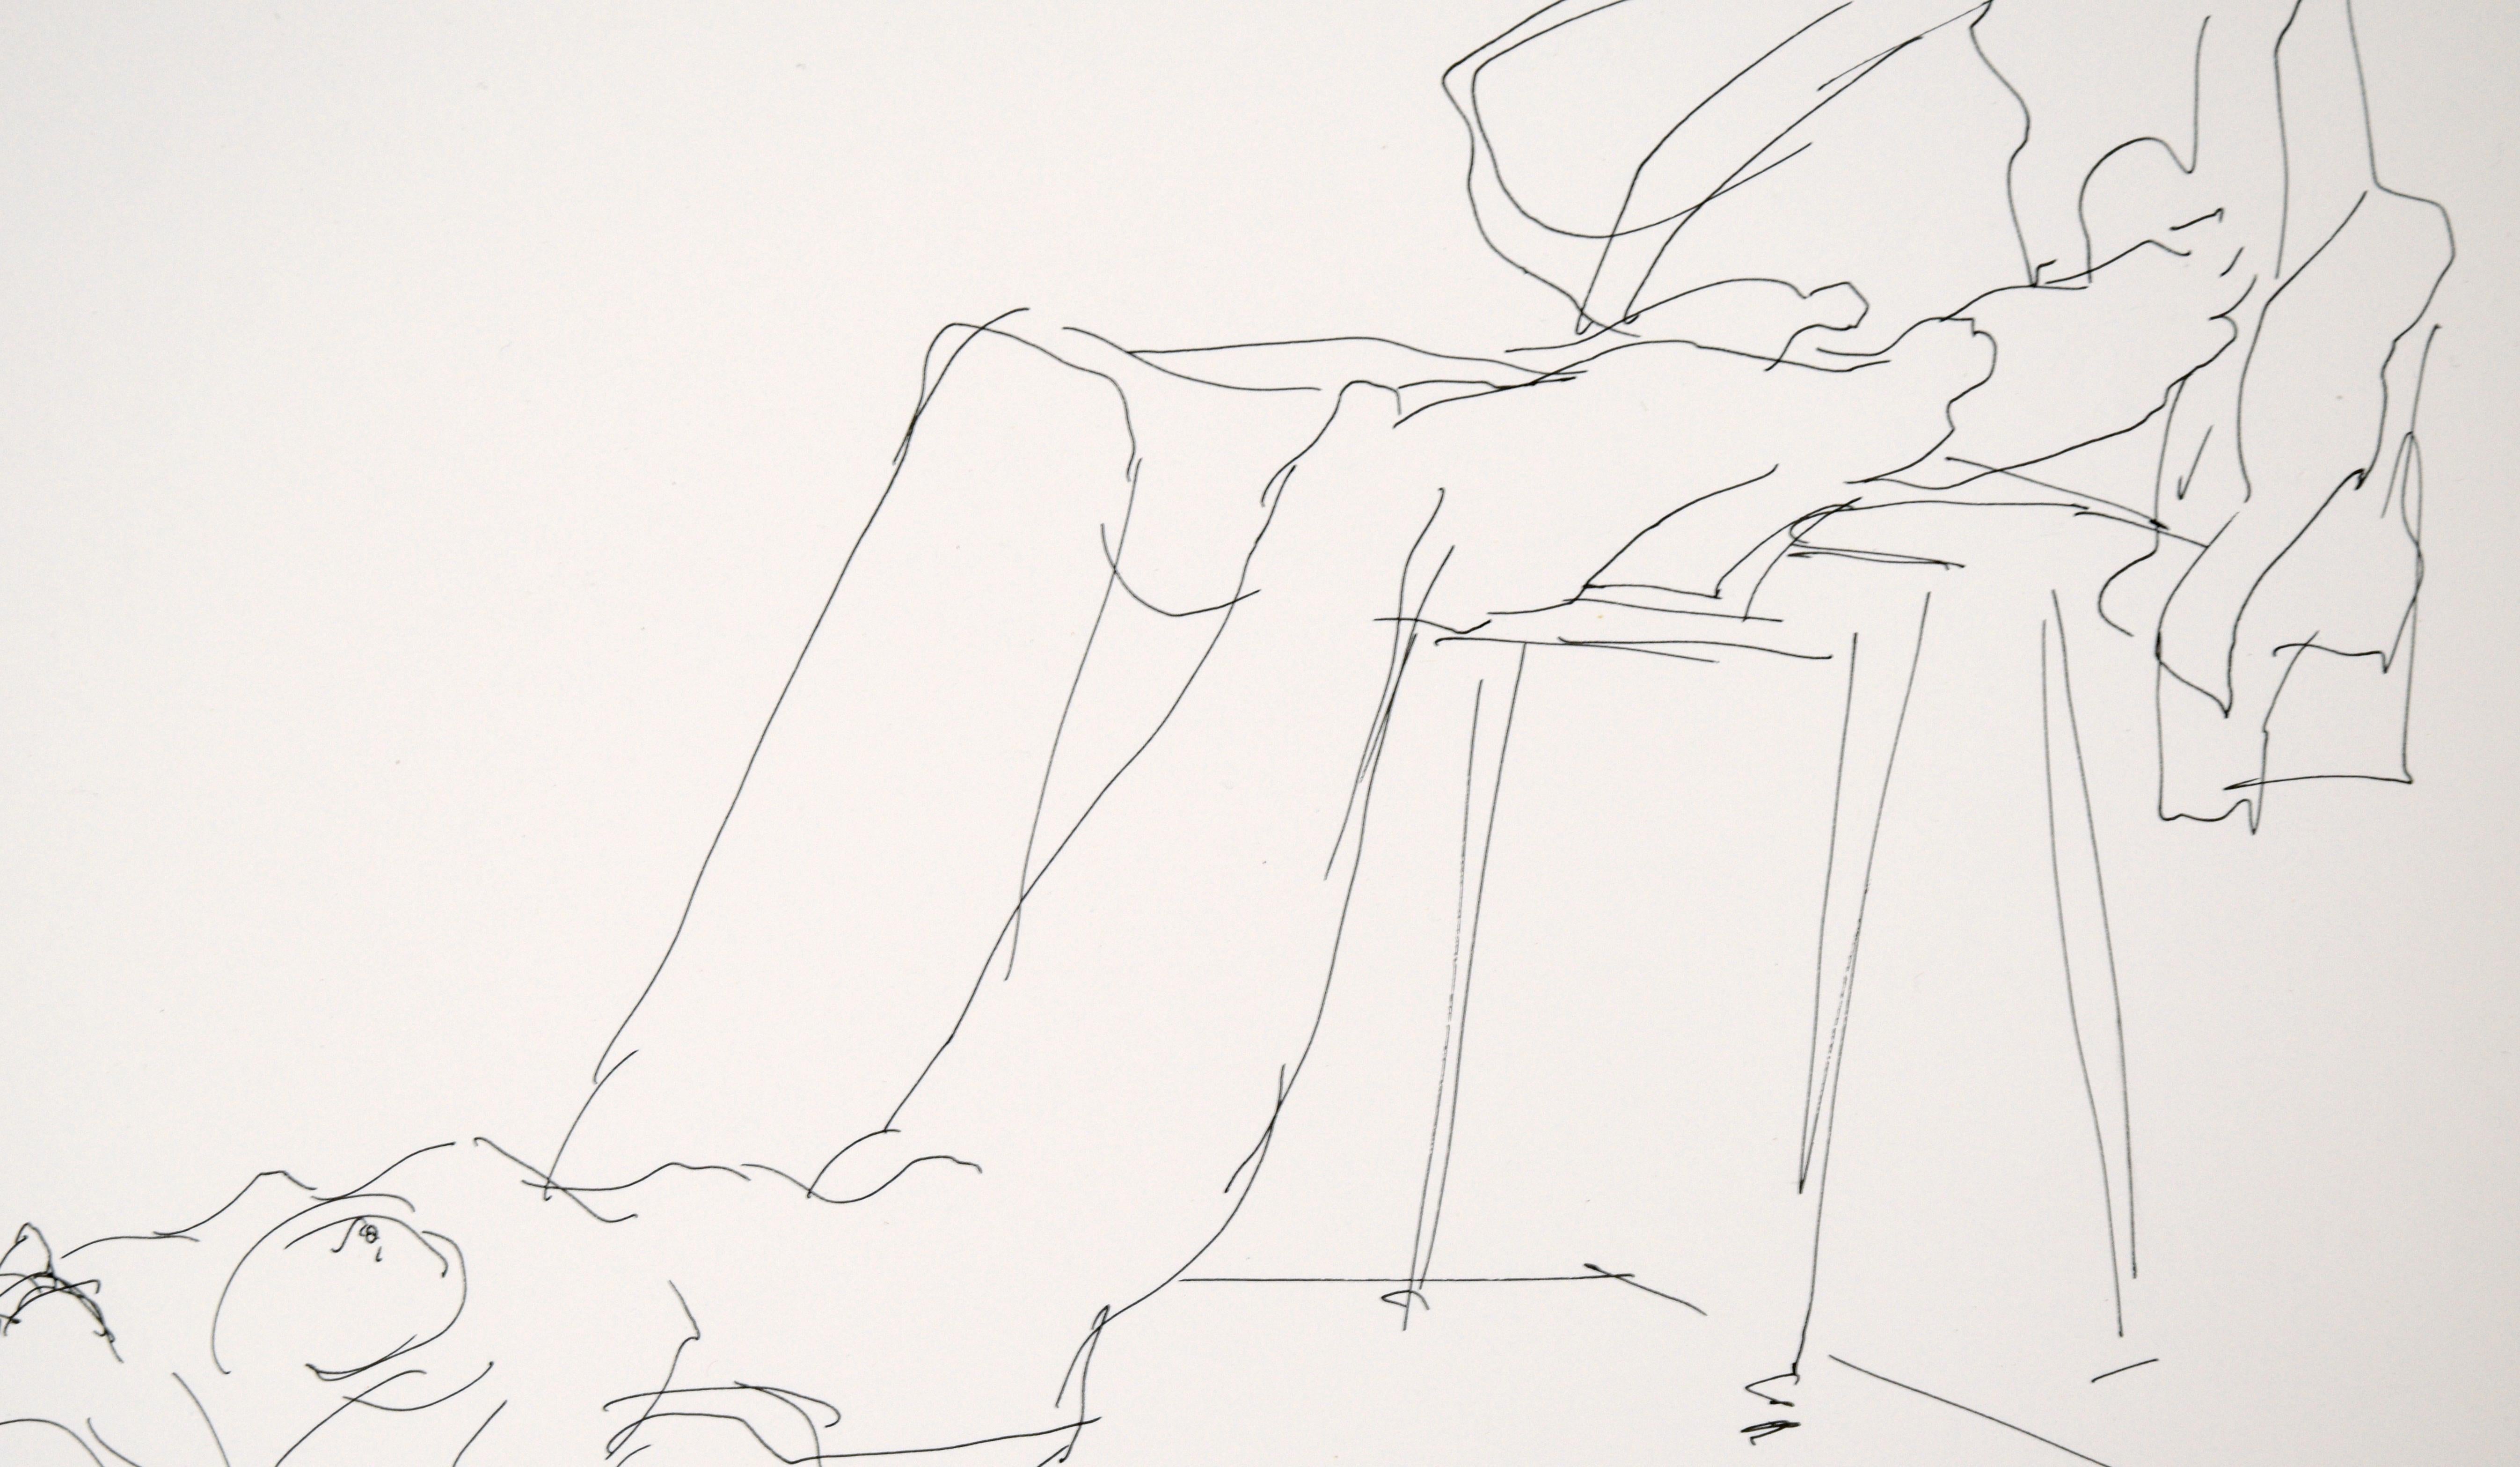 Saubere und selbstbewusste Skizze eines Aktmodells von einem unbekannten Künstler aus der San Francisco Bay Area (20. Jahrhundert). Eine Frau liegt auf dem Rücken, hat die Arme über dem Kopf und die Beine auf einen Stuhl gelegt. Über den Stuhl ist